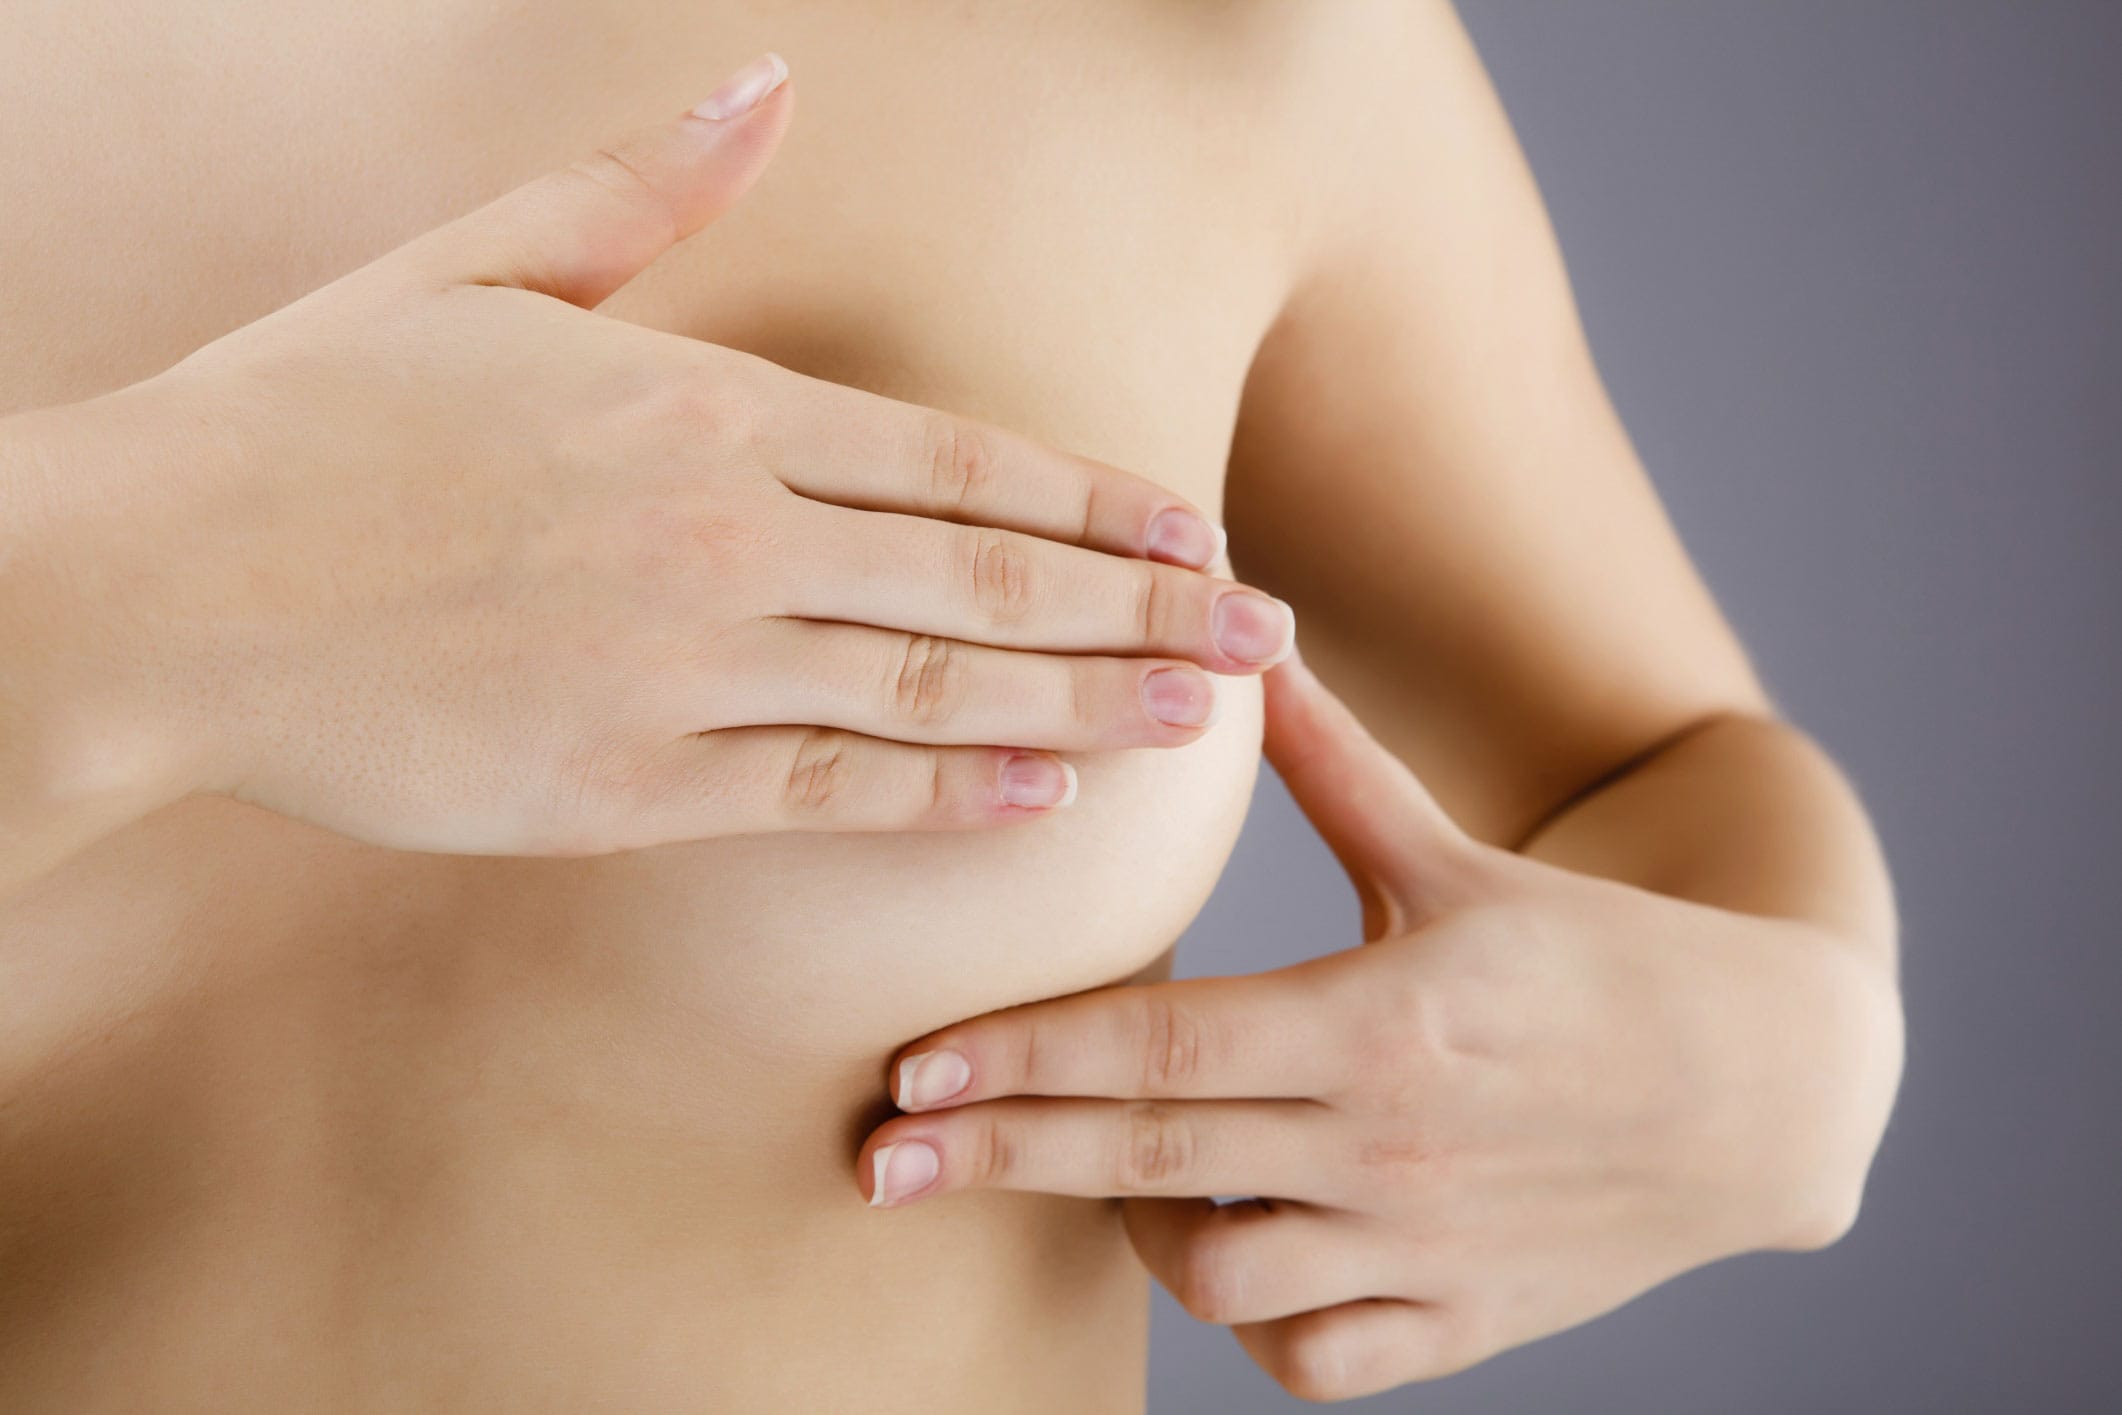 cosas que debes saber antes de operarte los senos